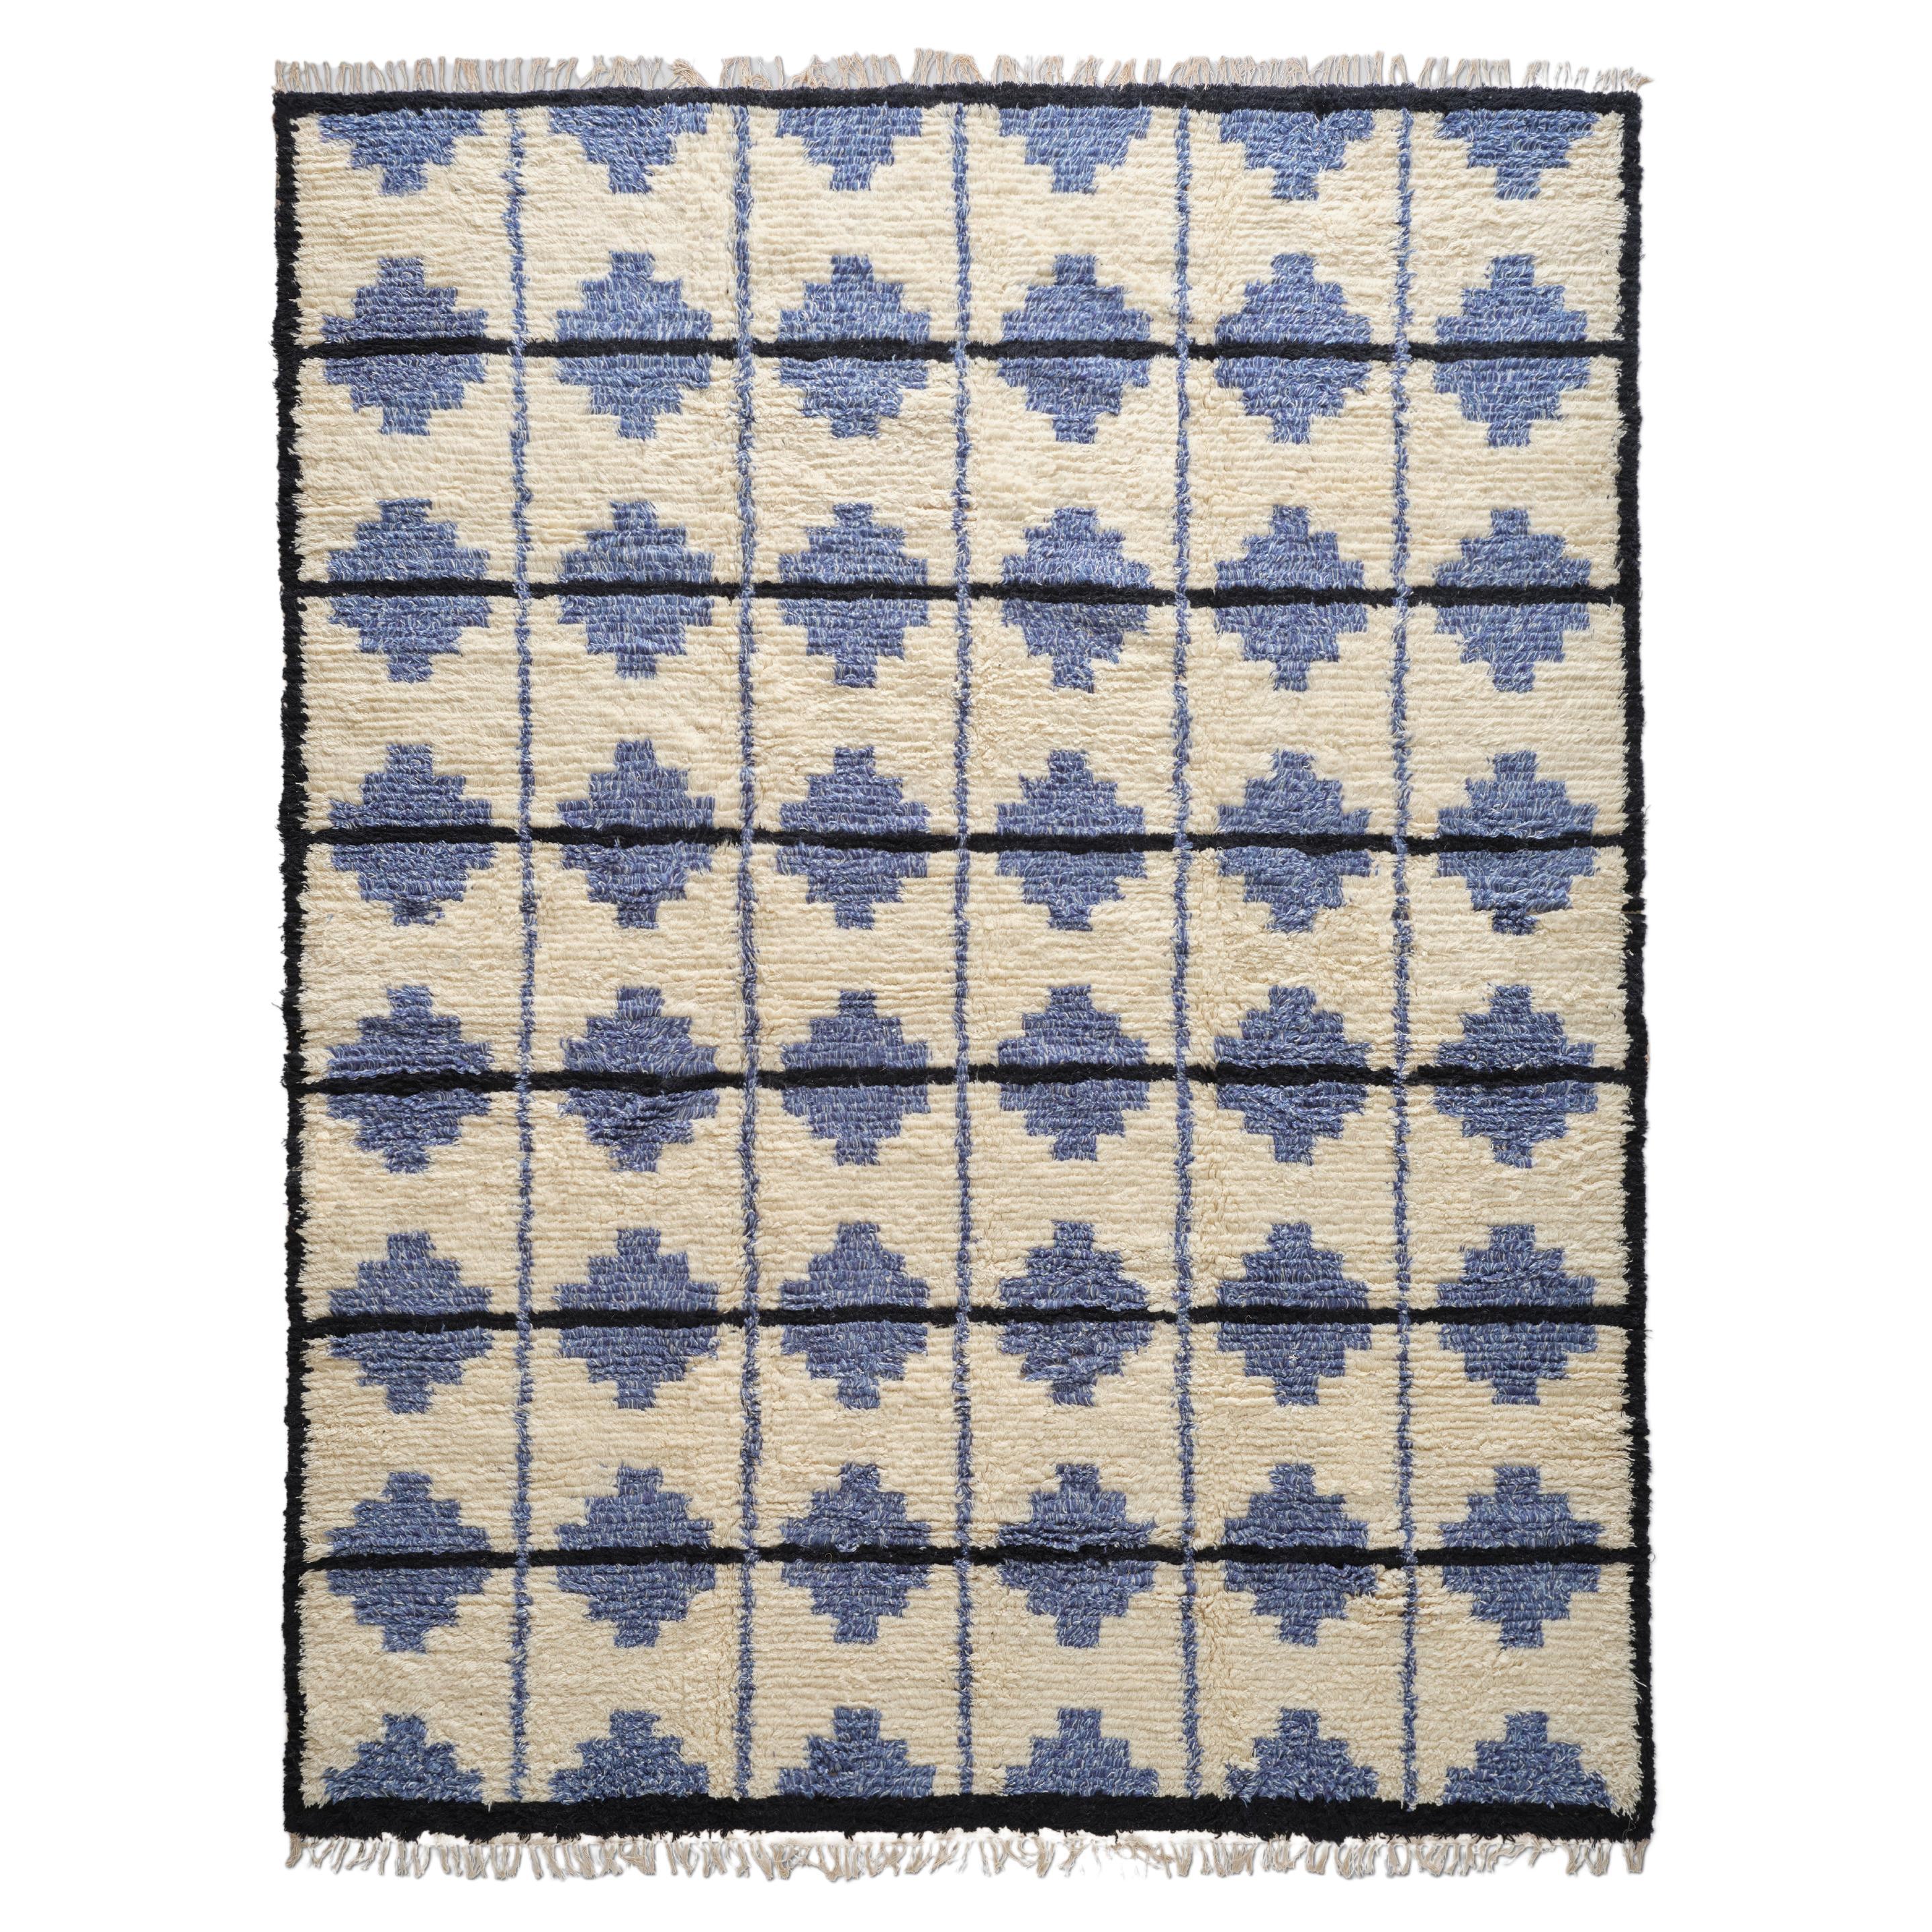 The Forsyth Shaggy Tile Rug - Blue and Cream, 6x9